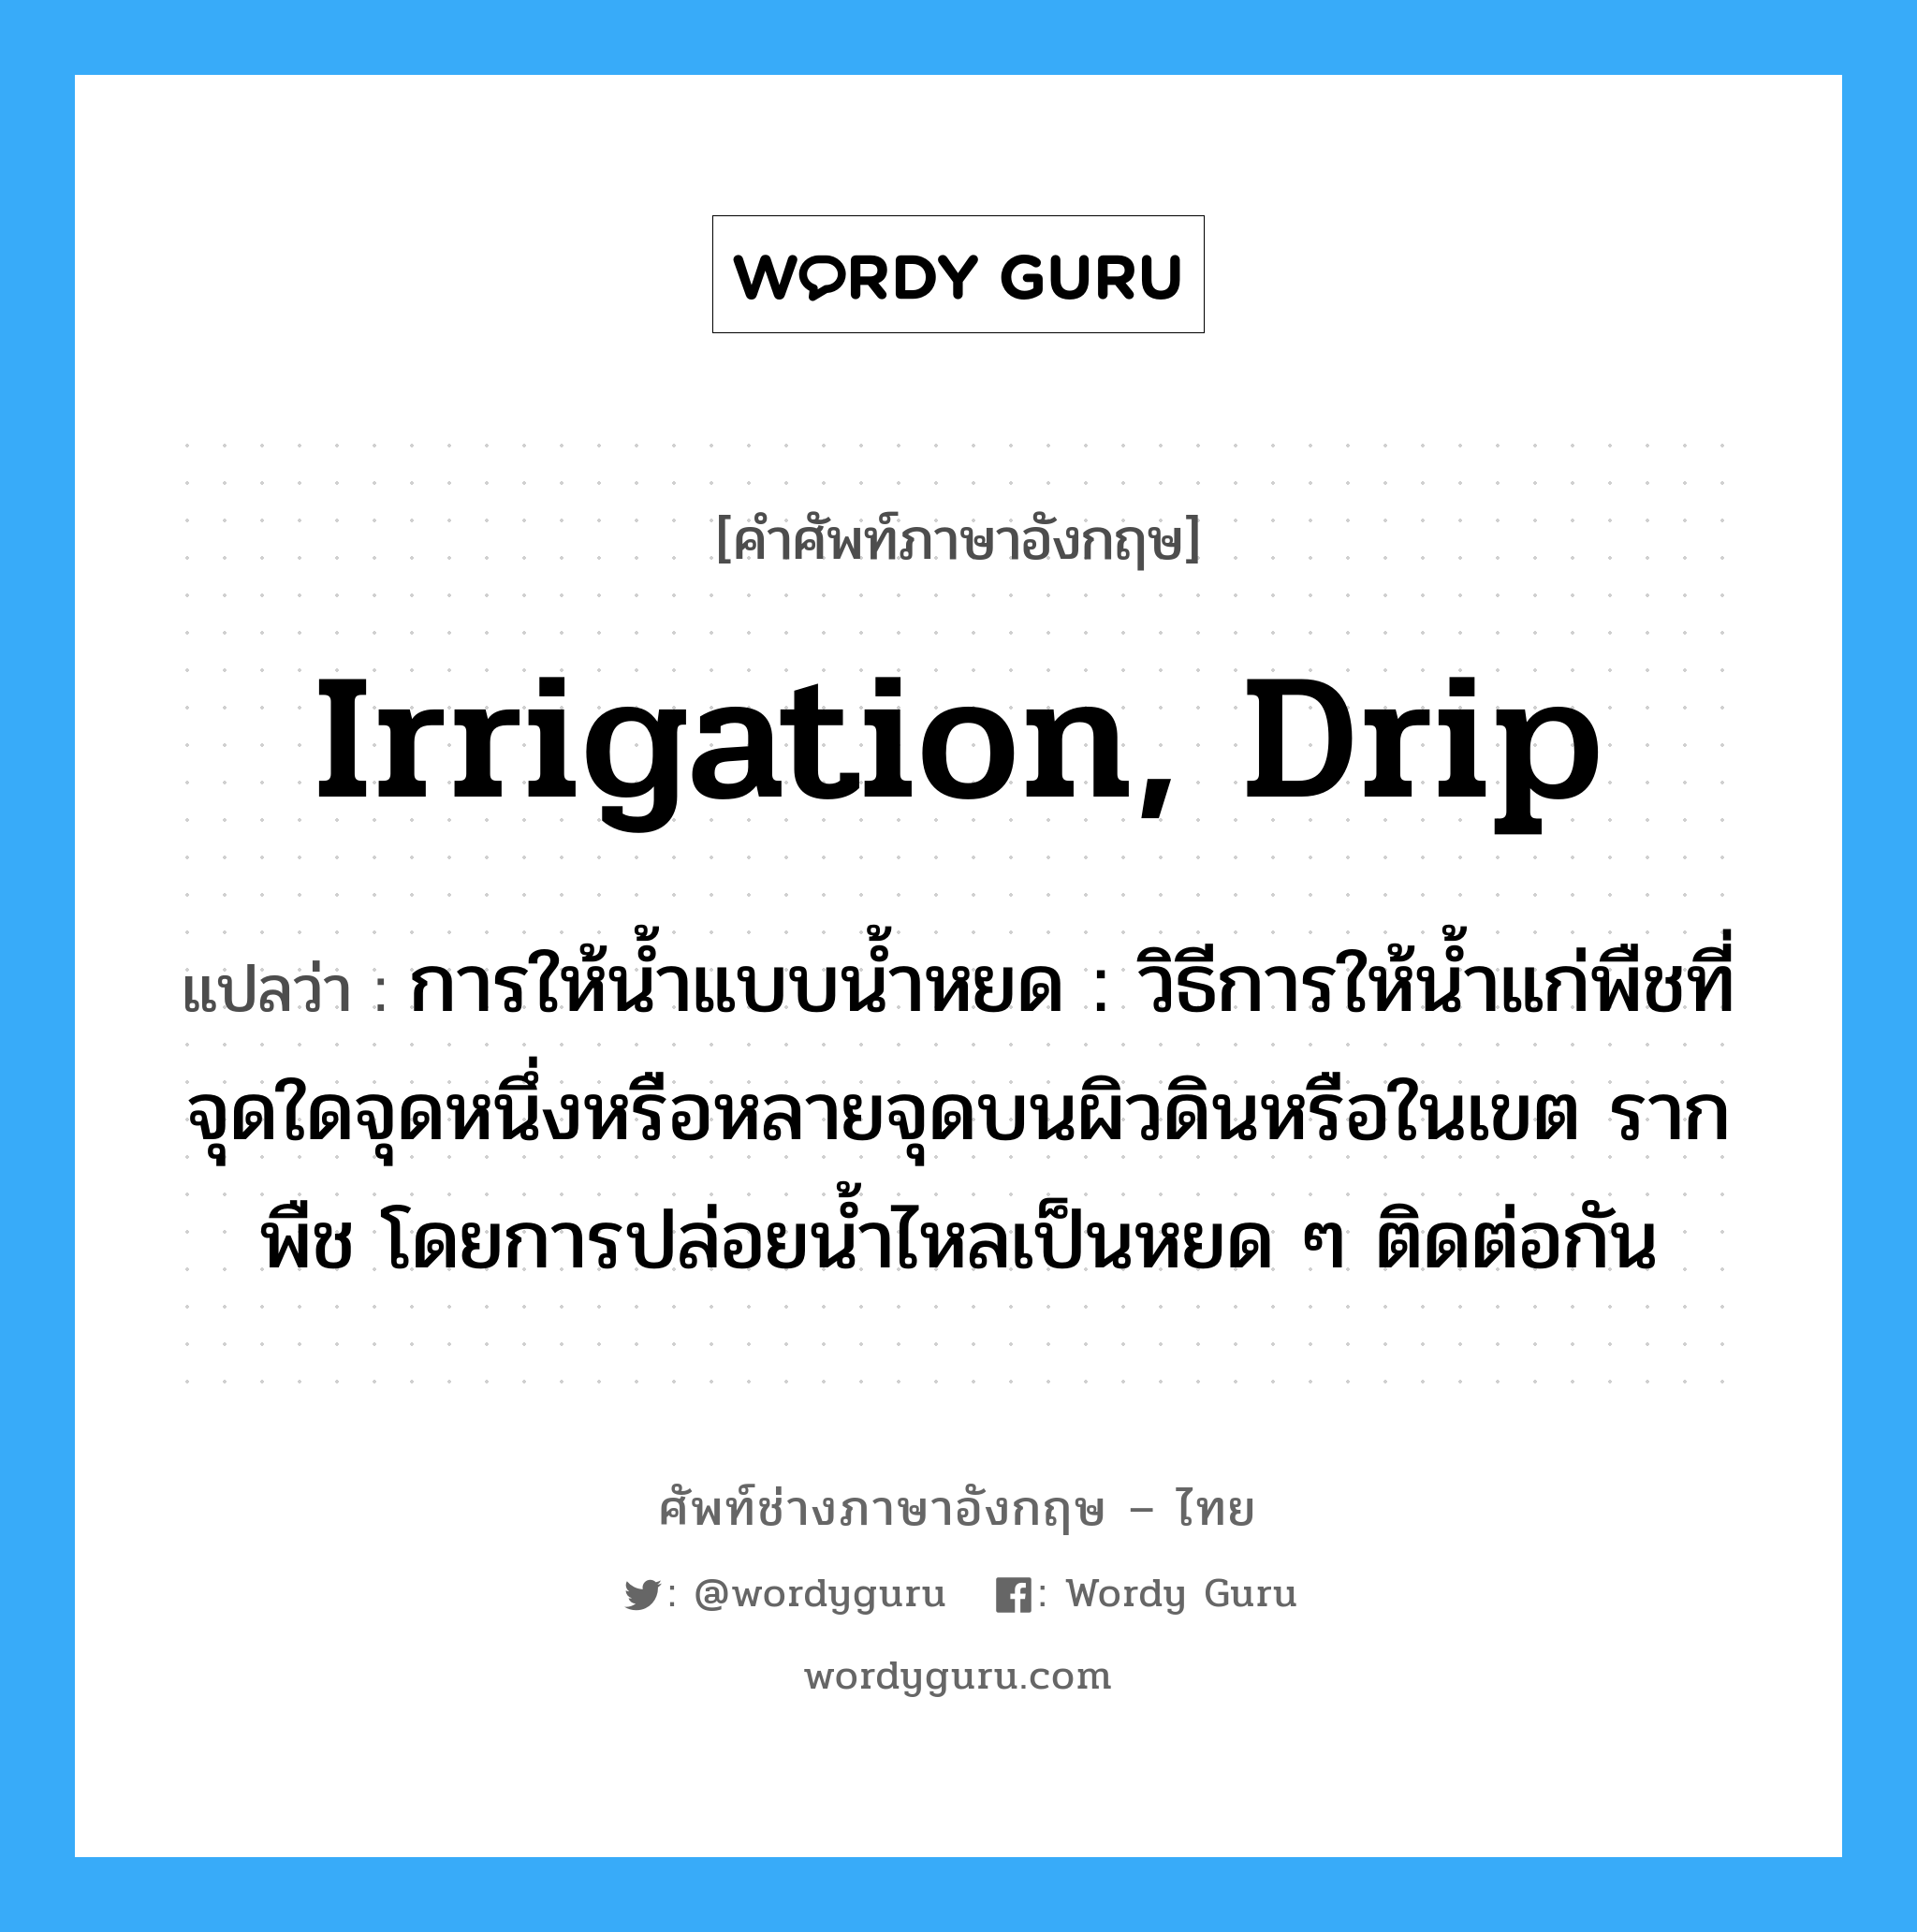 irrigation, drip แปลว่า?, คำศัพท์ช่างภาษาอังกฤษ - ไทย irrigation, drip คำศัพท์ภาษาอังกฤษ irrigation, drip แปลว่า การให้น้ำแบบน้ำหยด : วิธีการให้น้ำแก่พืชที่จุดใดจุดหนึ่งหรือหลายจุดบนผิวดินหรือในเขต รากพืช โดยการปล่อยน้ำไหลเป็นหยด ๆ ติดต่อกัน